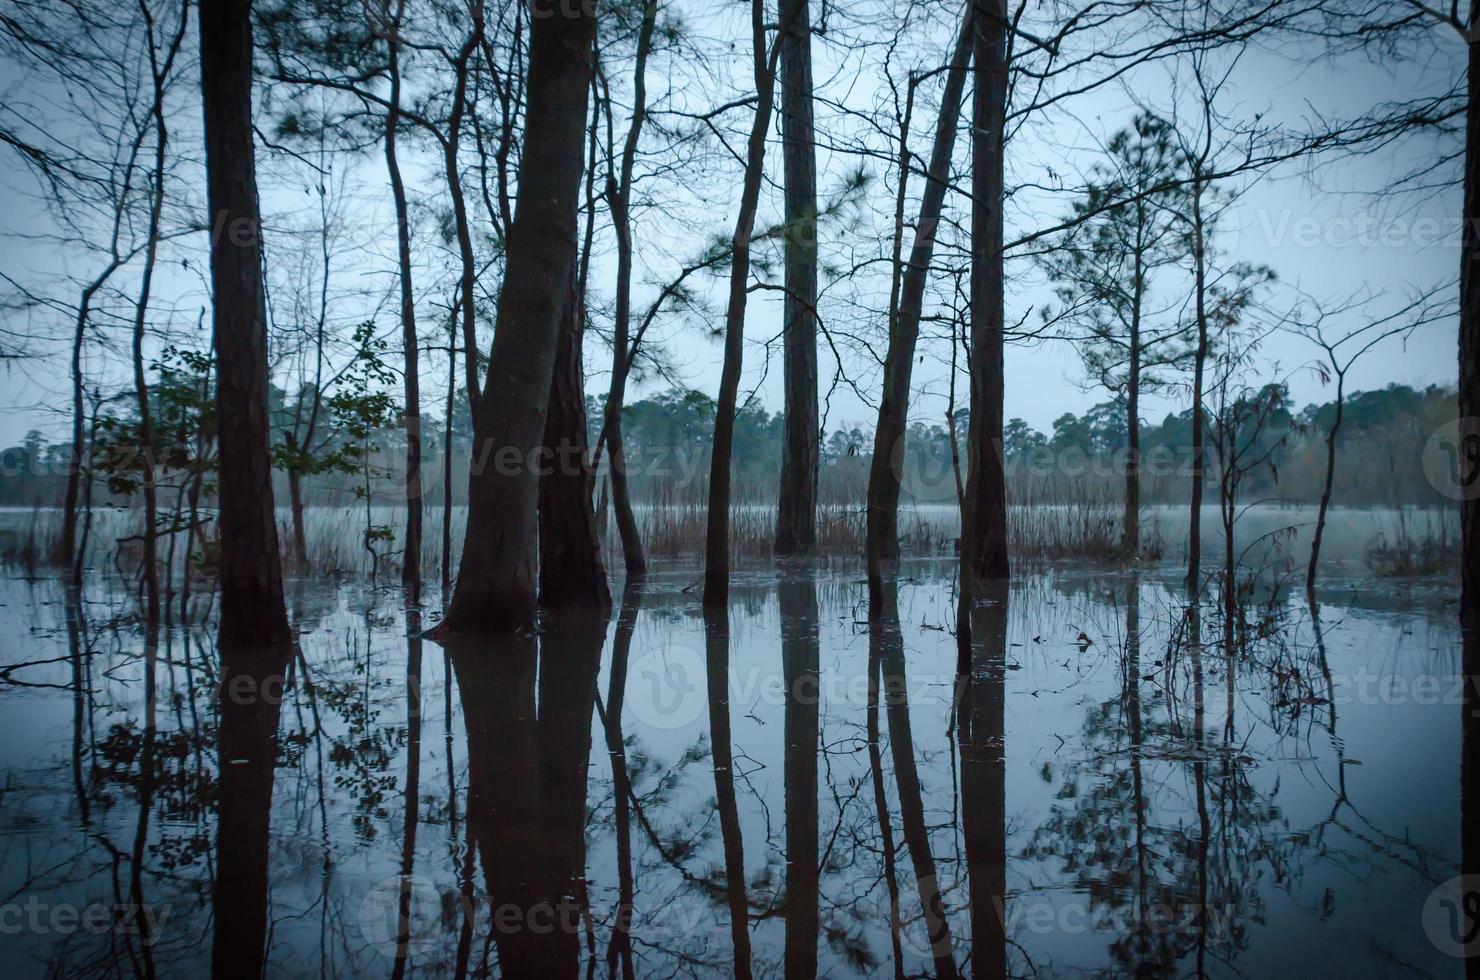 Las fuertes lluvias han sumergido los árboles que se encuentran en el borde del estanque, sus formas se reflejan en el suelo empapado de agua en esta mañana de principios de invierno antes del amanecer. foto